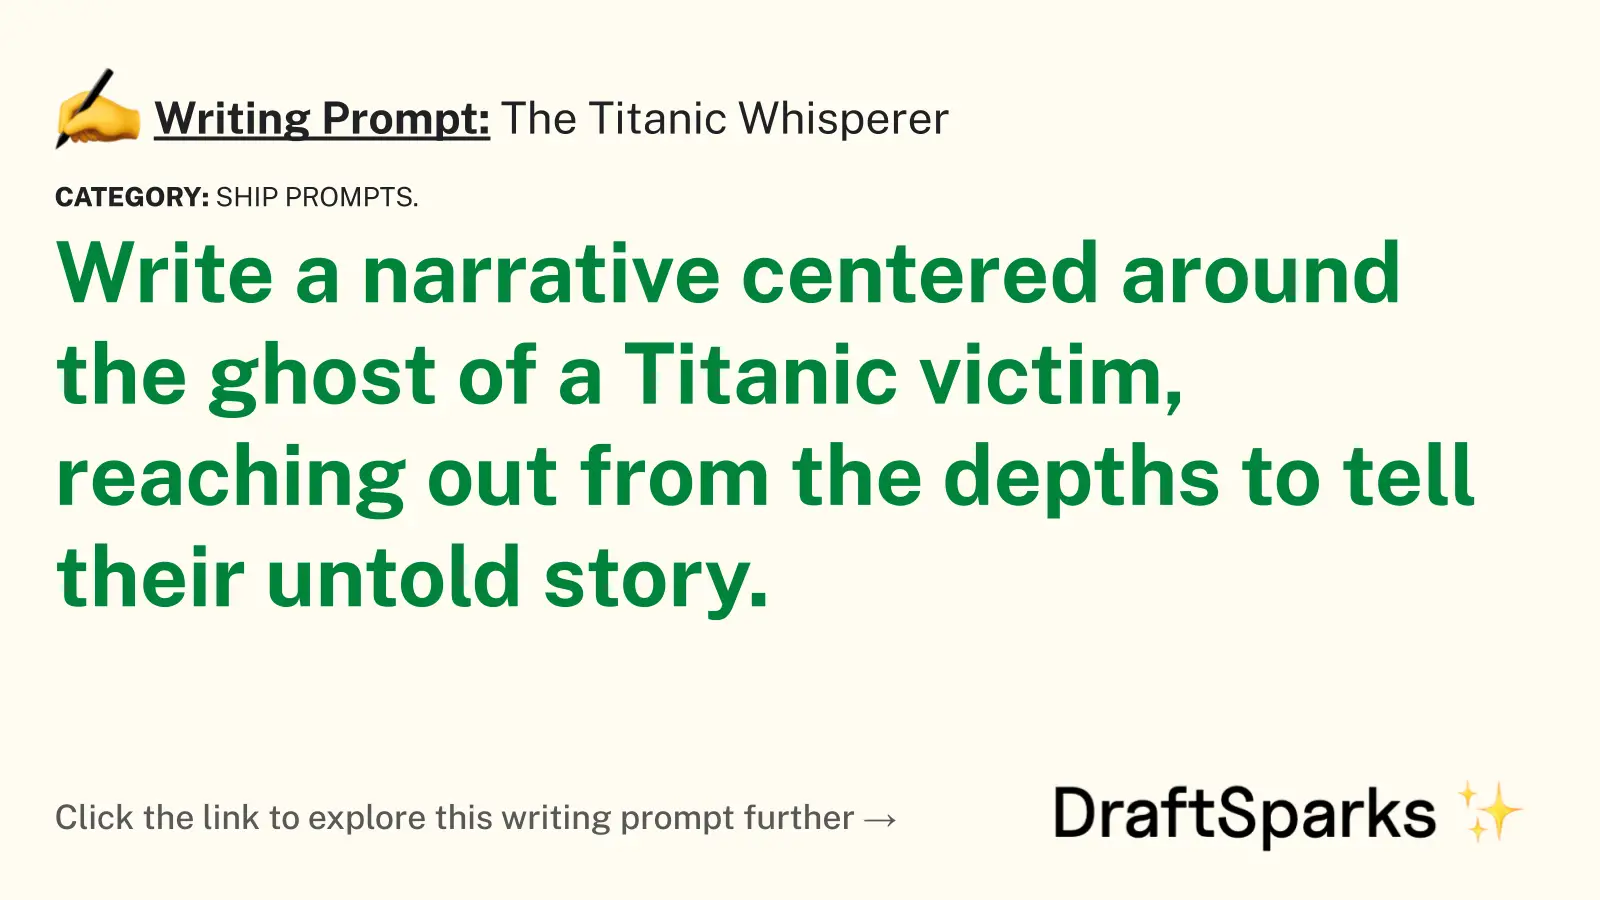 The Titanic Whisperer